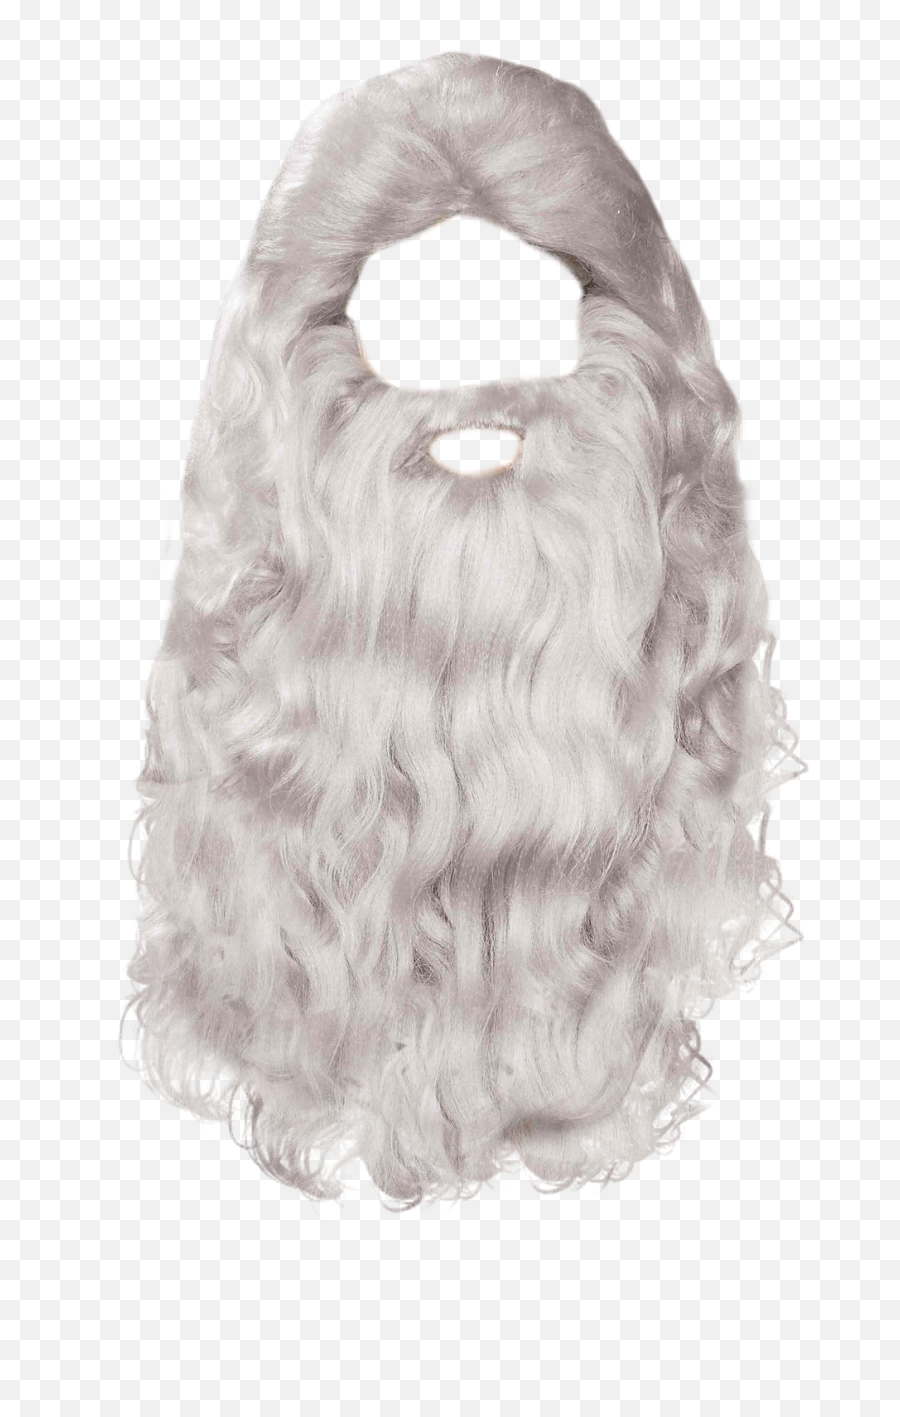 Download Beard Png - Santa Claus Beard Png,Beard Transparent Background